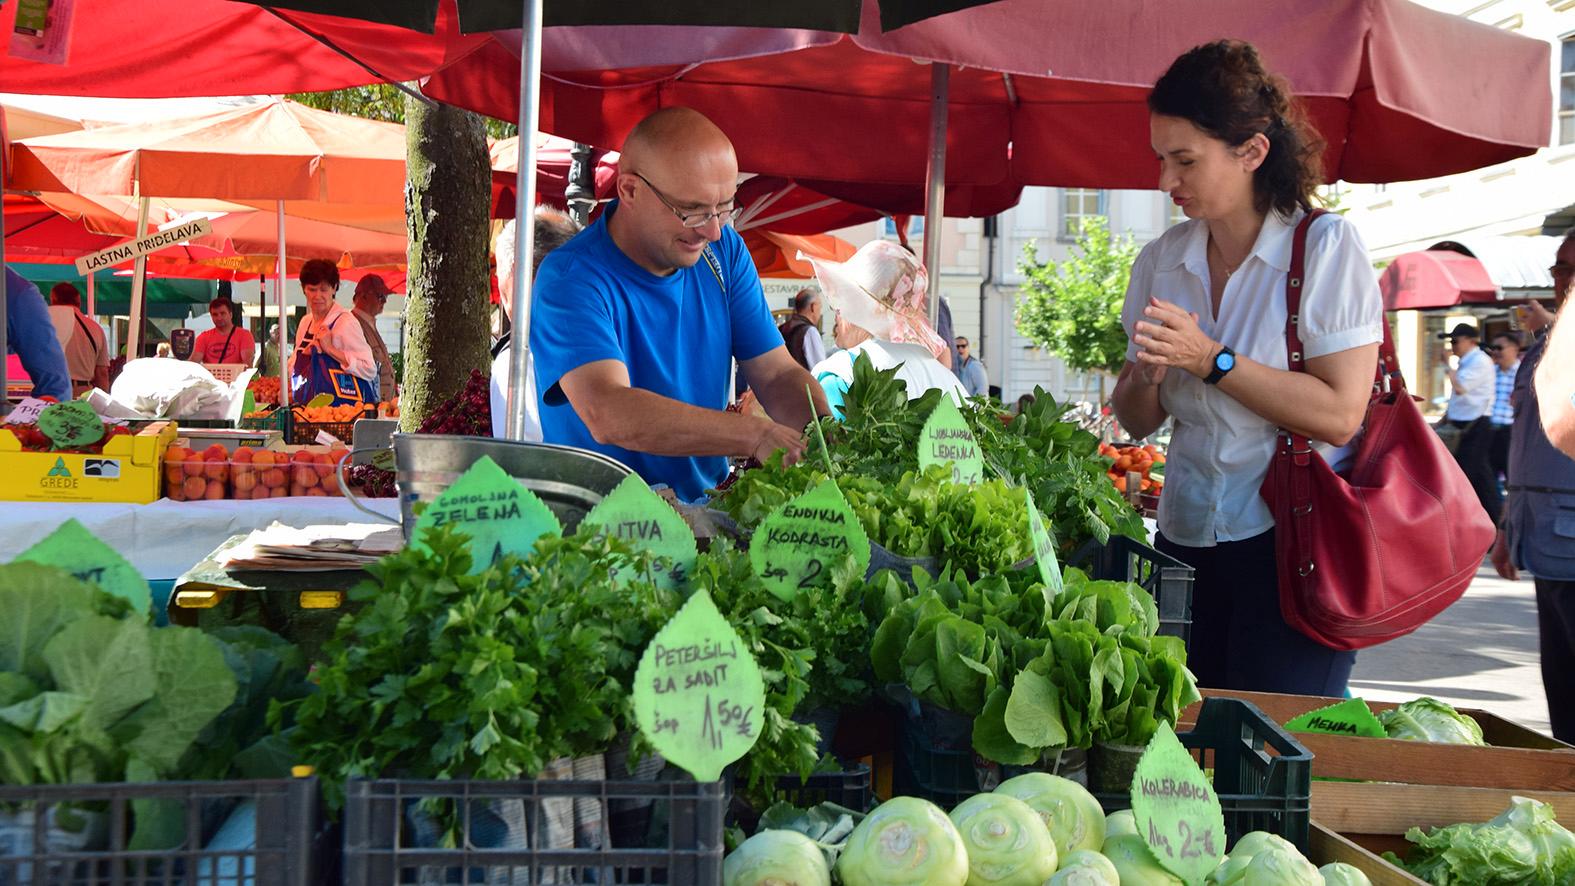 Grönsaksmarknad i Ljubljana ur serien ”Balkans metropoler”.